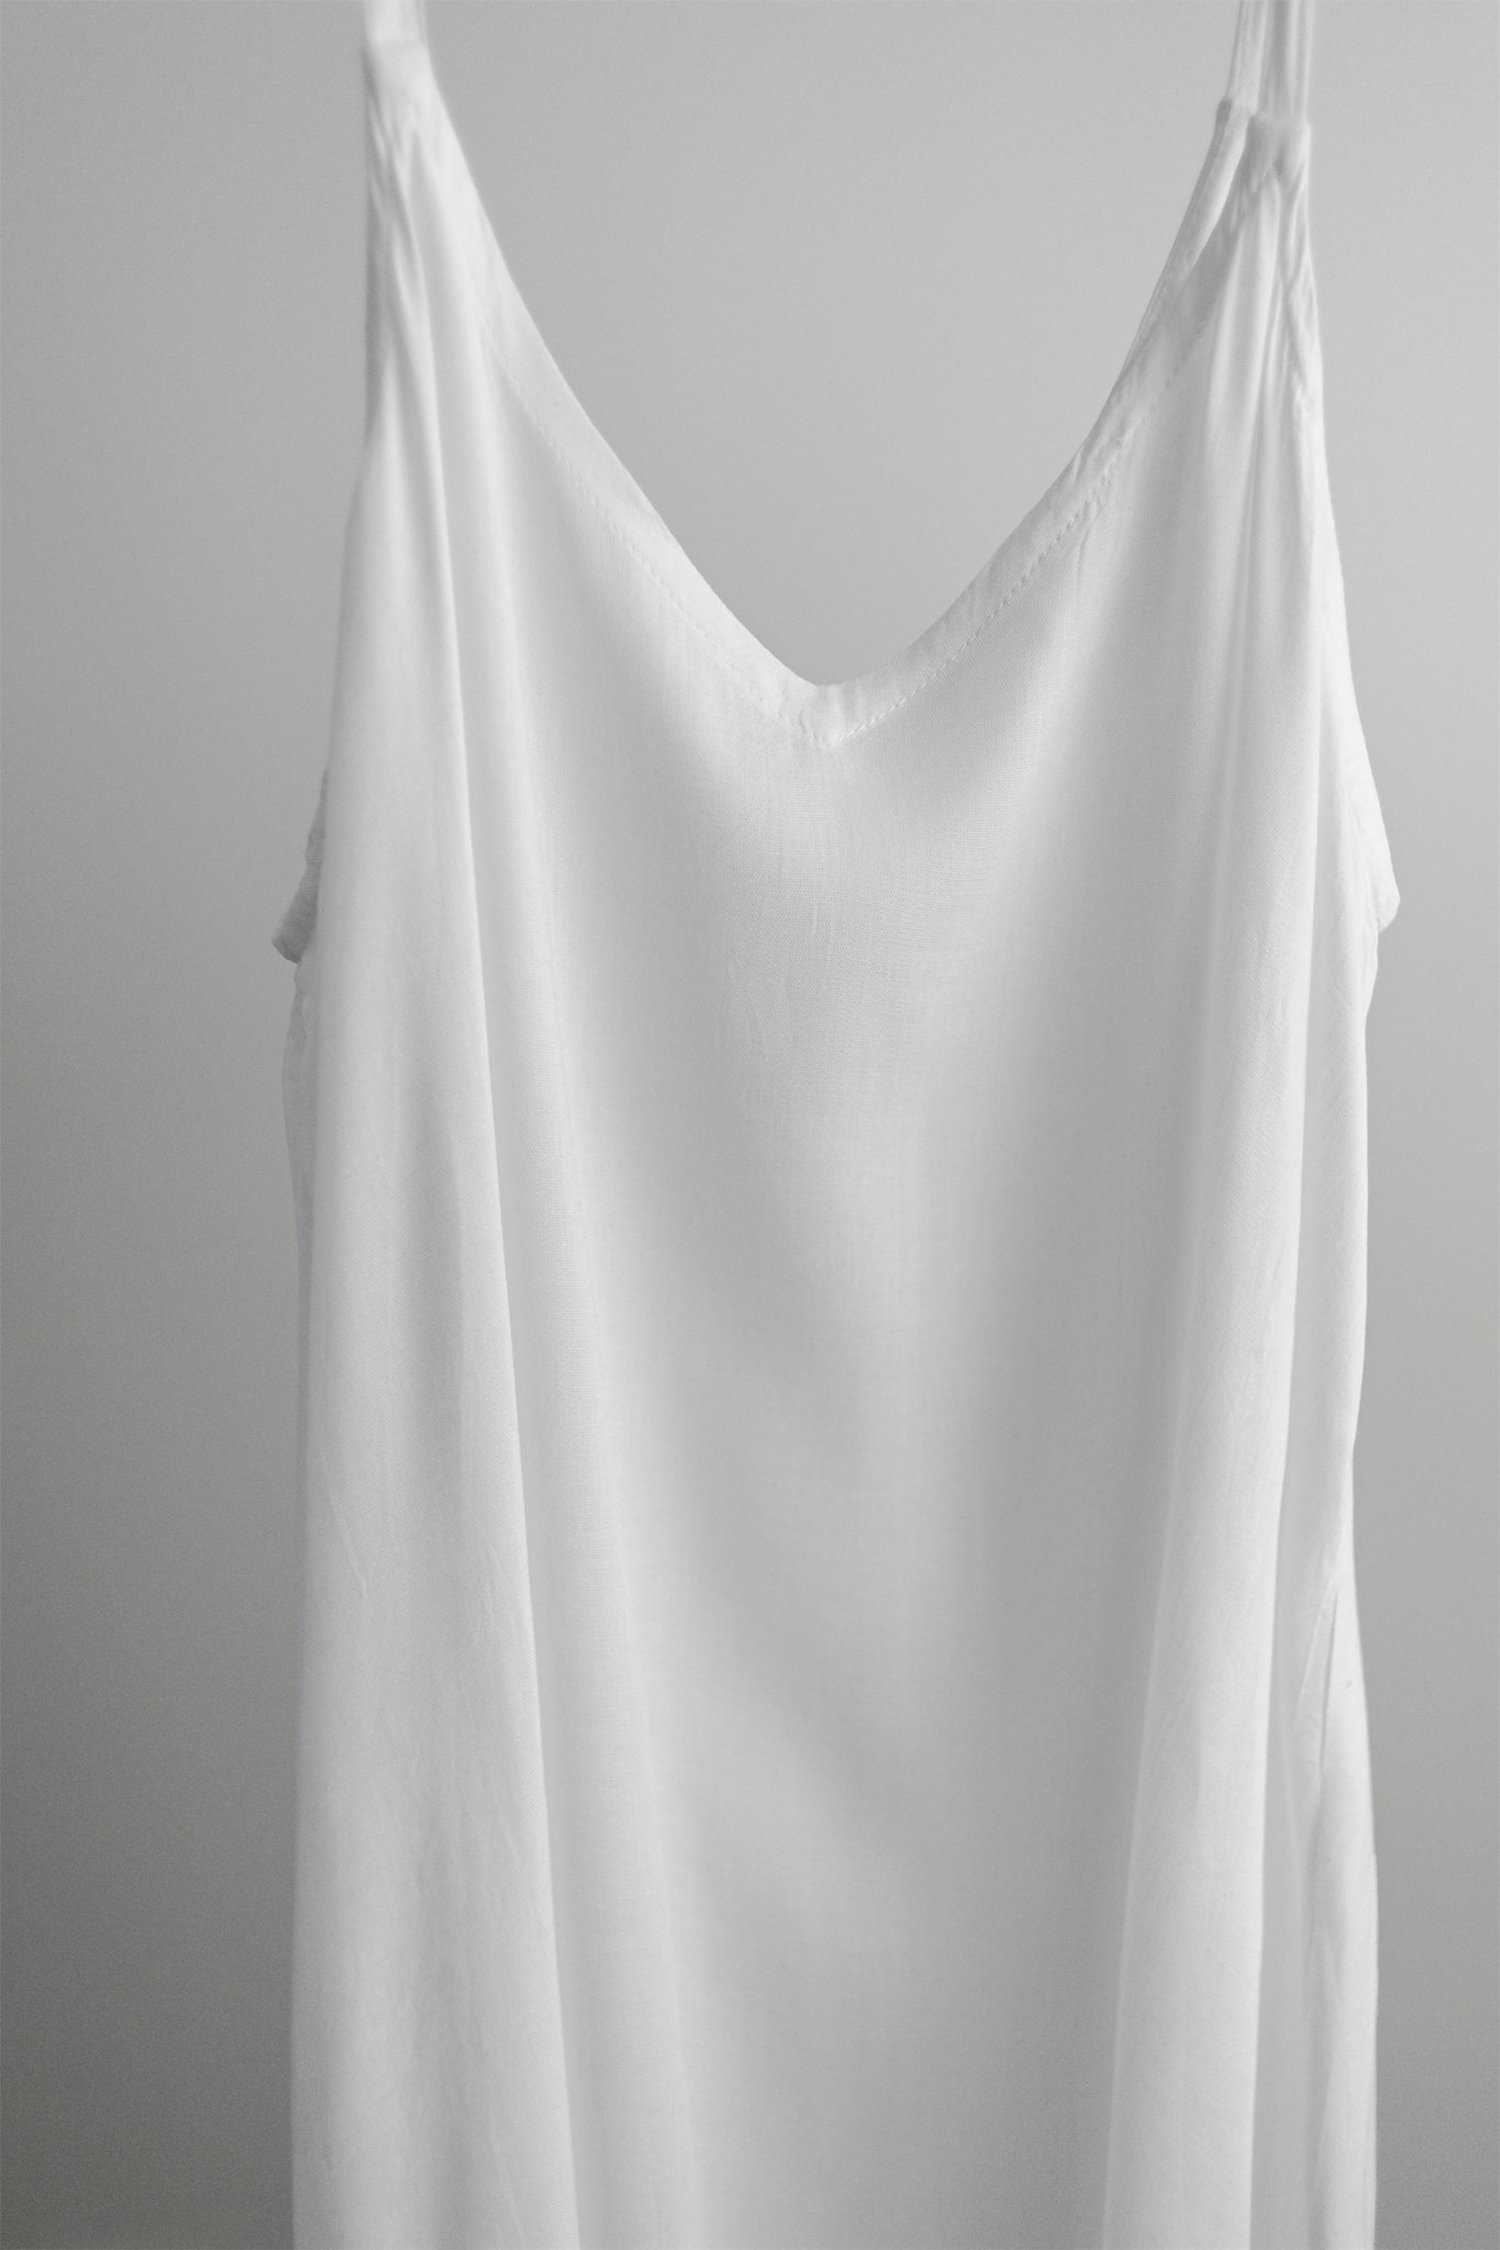 maxi-dress-3-tifanie-white-studio.jpg